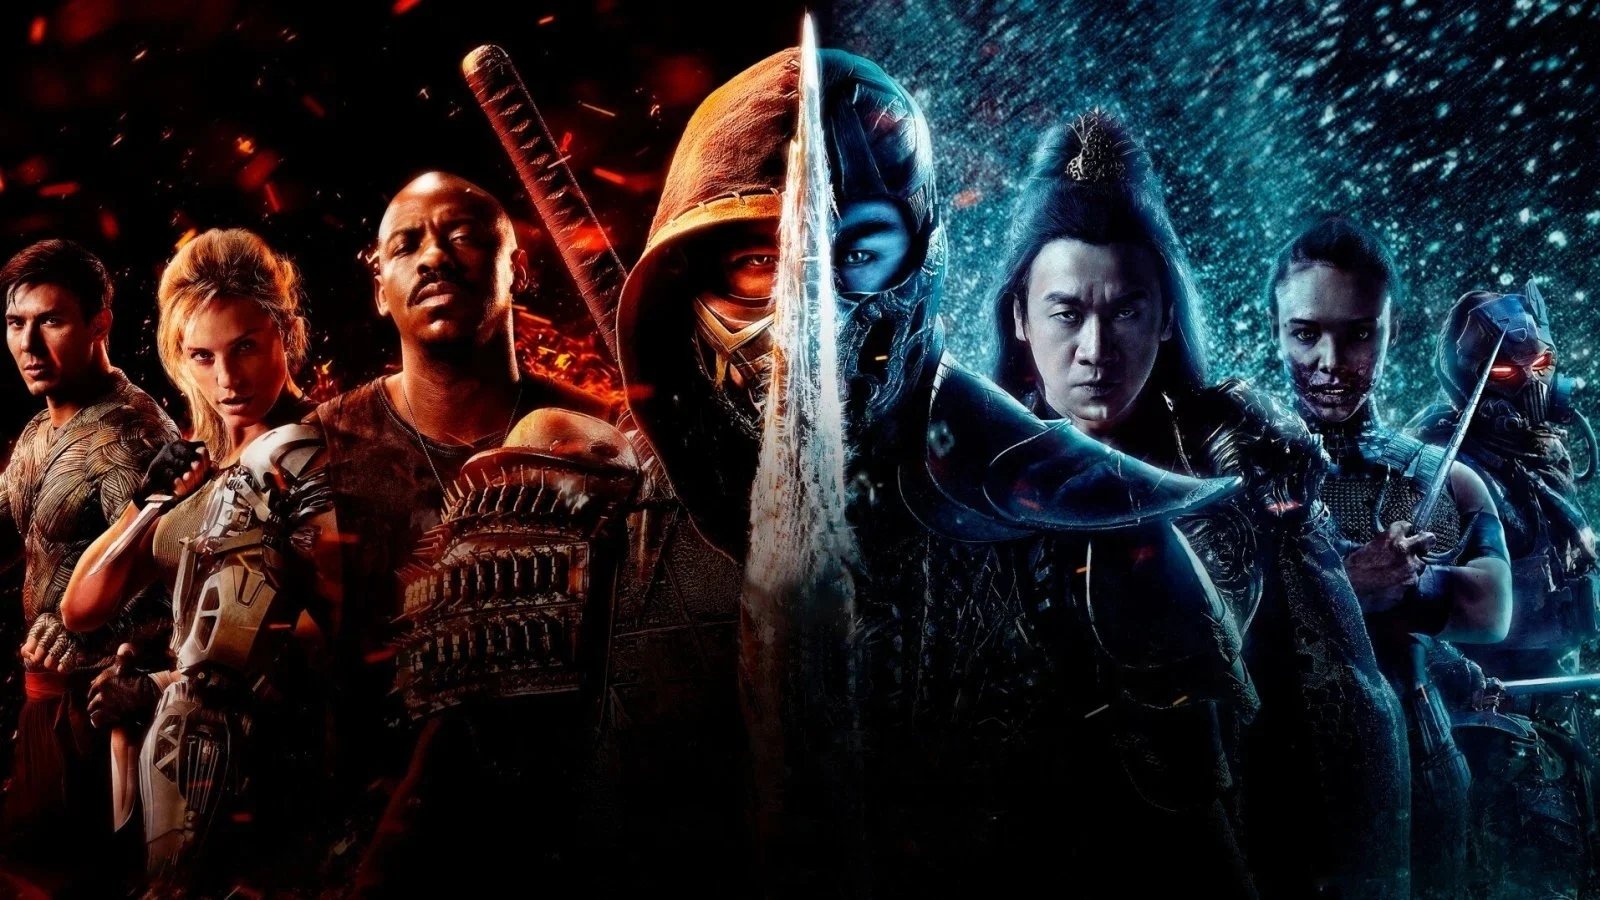 Mortal Kombat 2: un'immagine dal set anticipa il ritorno di Scorpion